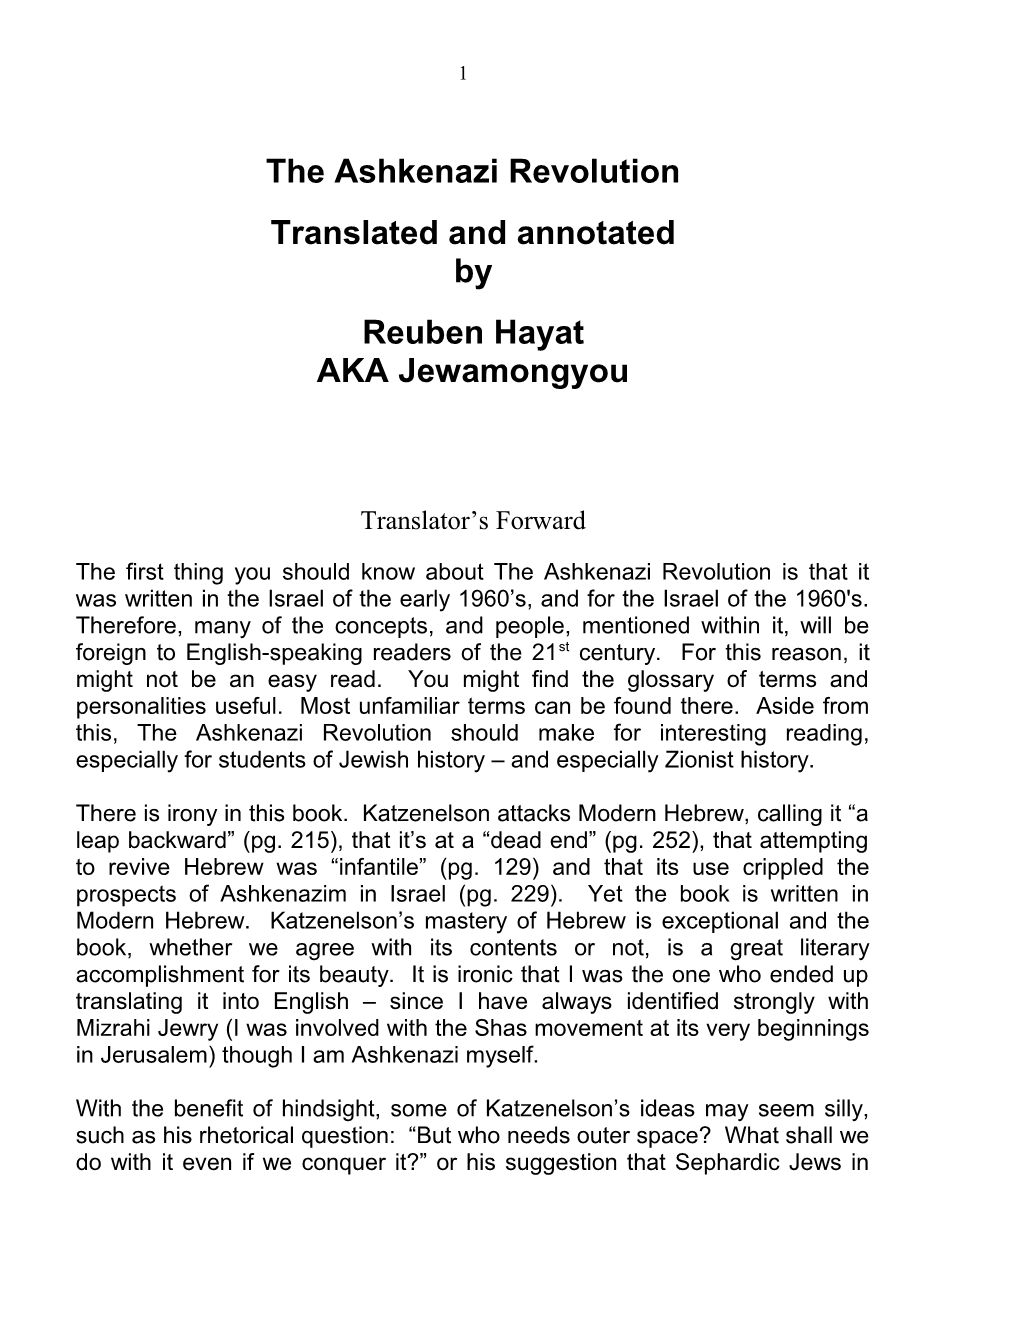 Ashkenazi Revolution Translated and Annotated by Reuben Hayat AKA Jewamongyou